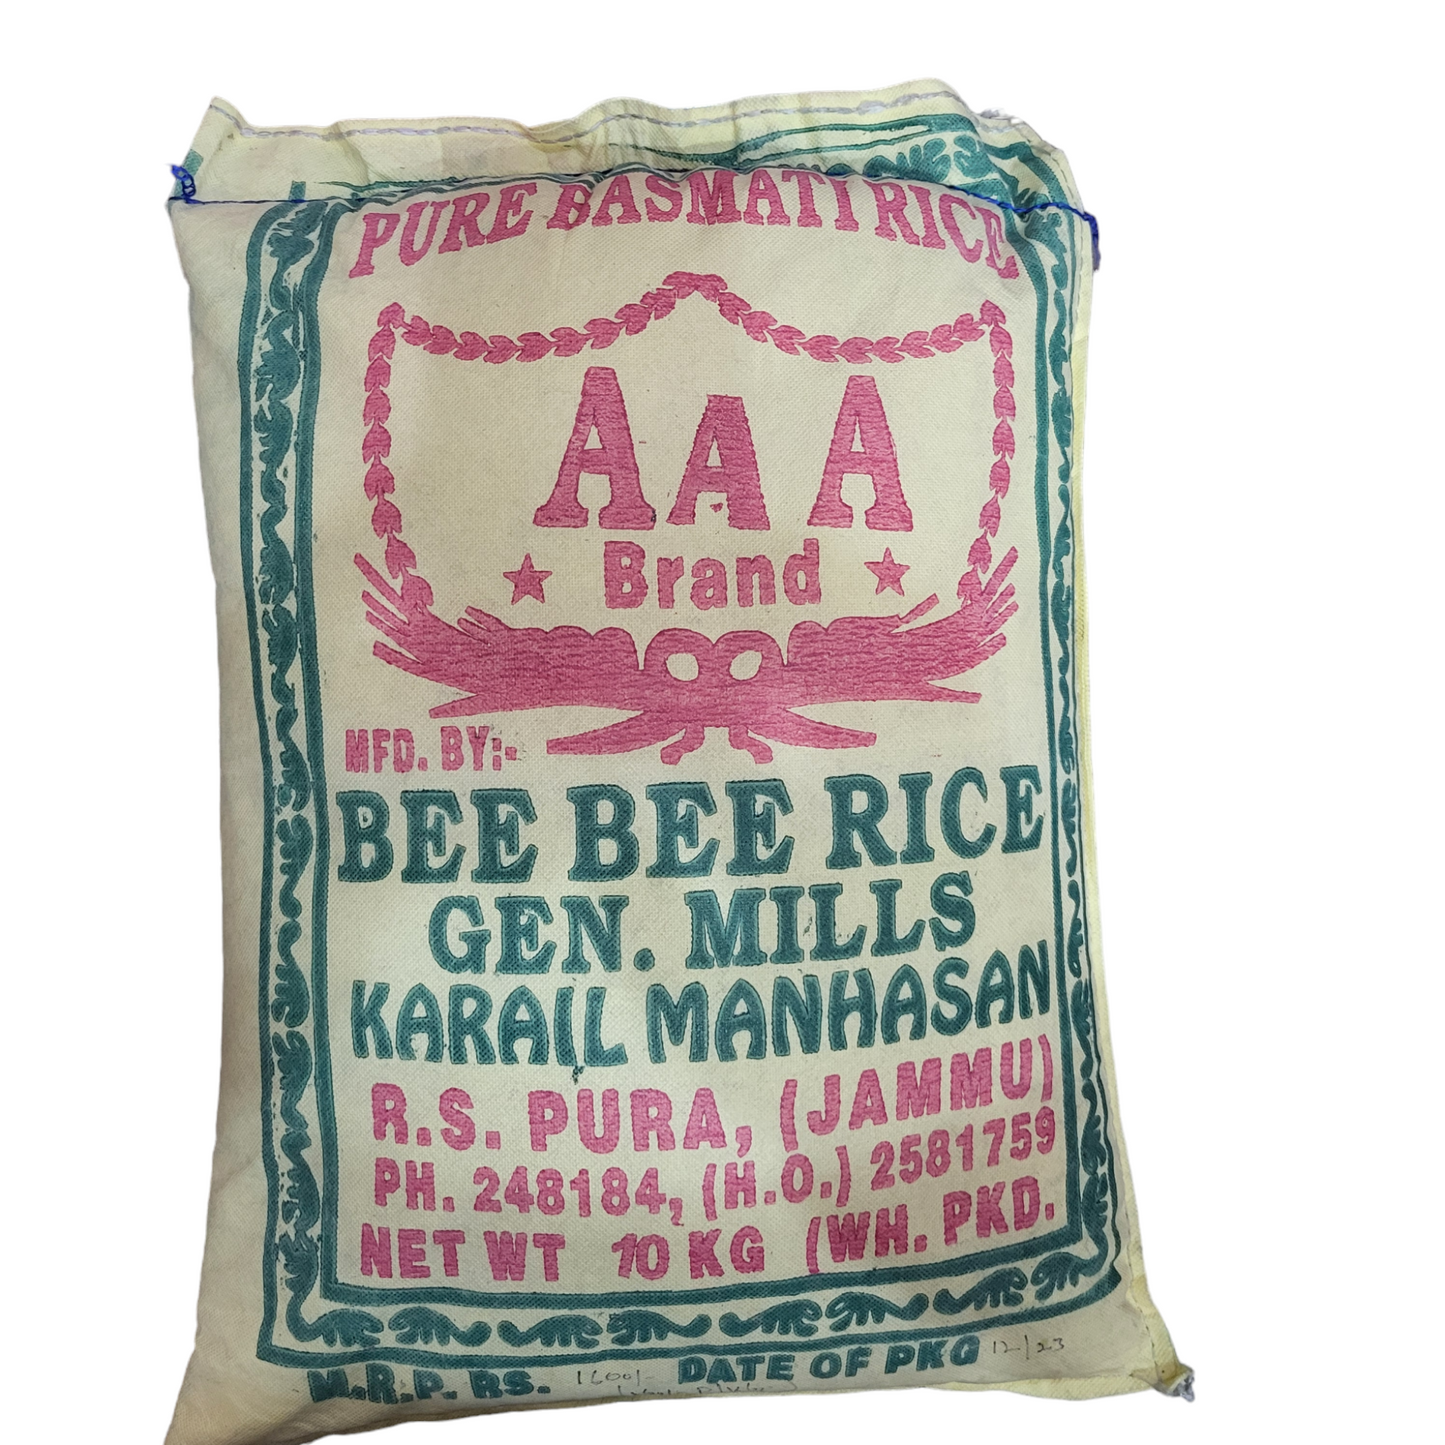 Basmati rice AAA Brand 10 kg